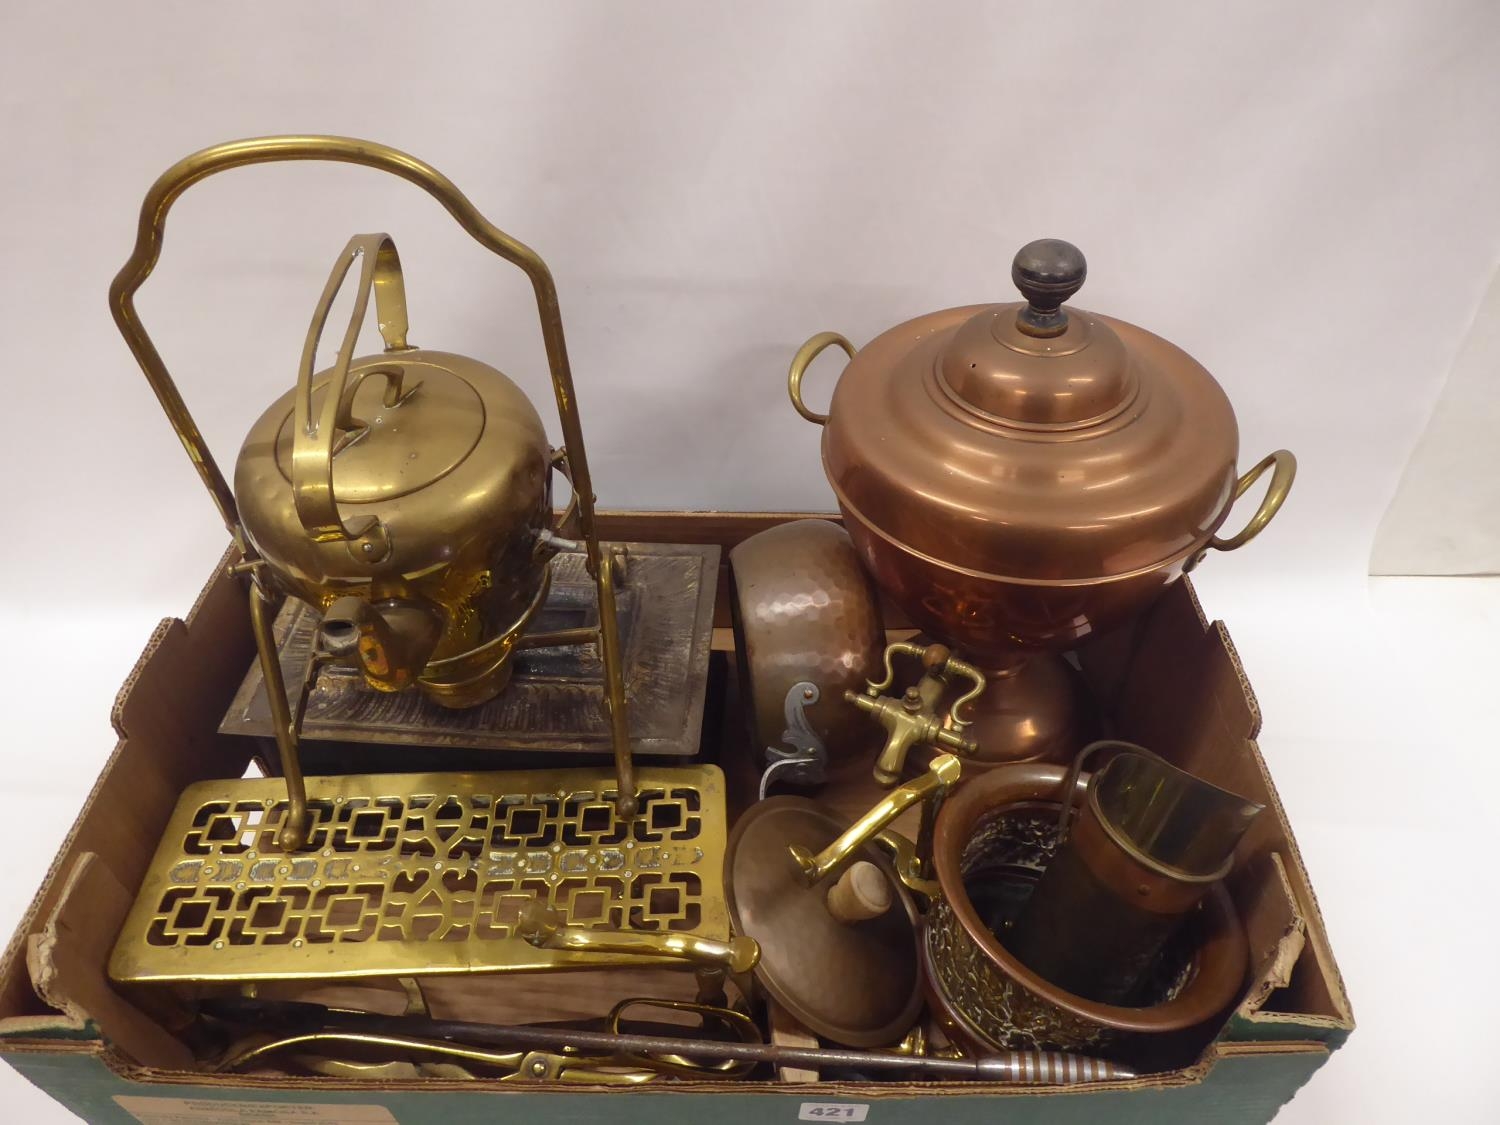 19th/20thC brass and copper - samovar, spirit kettle, trivet, fire